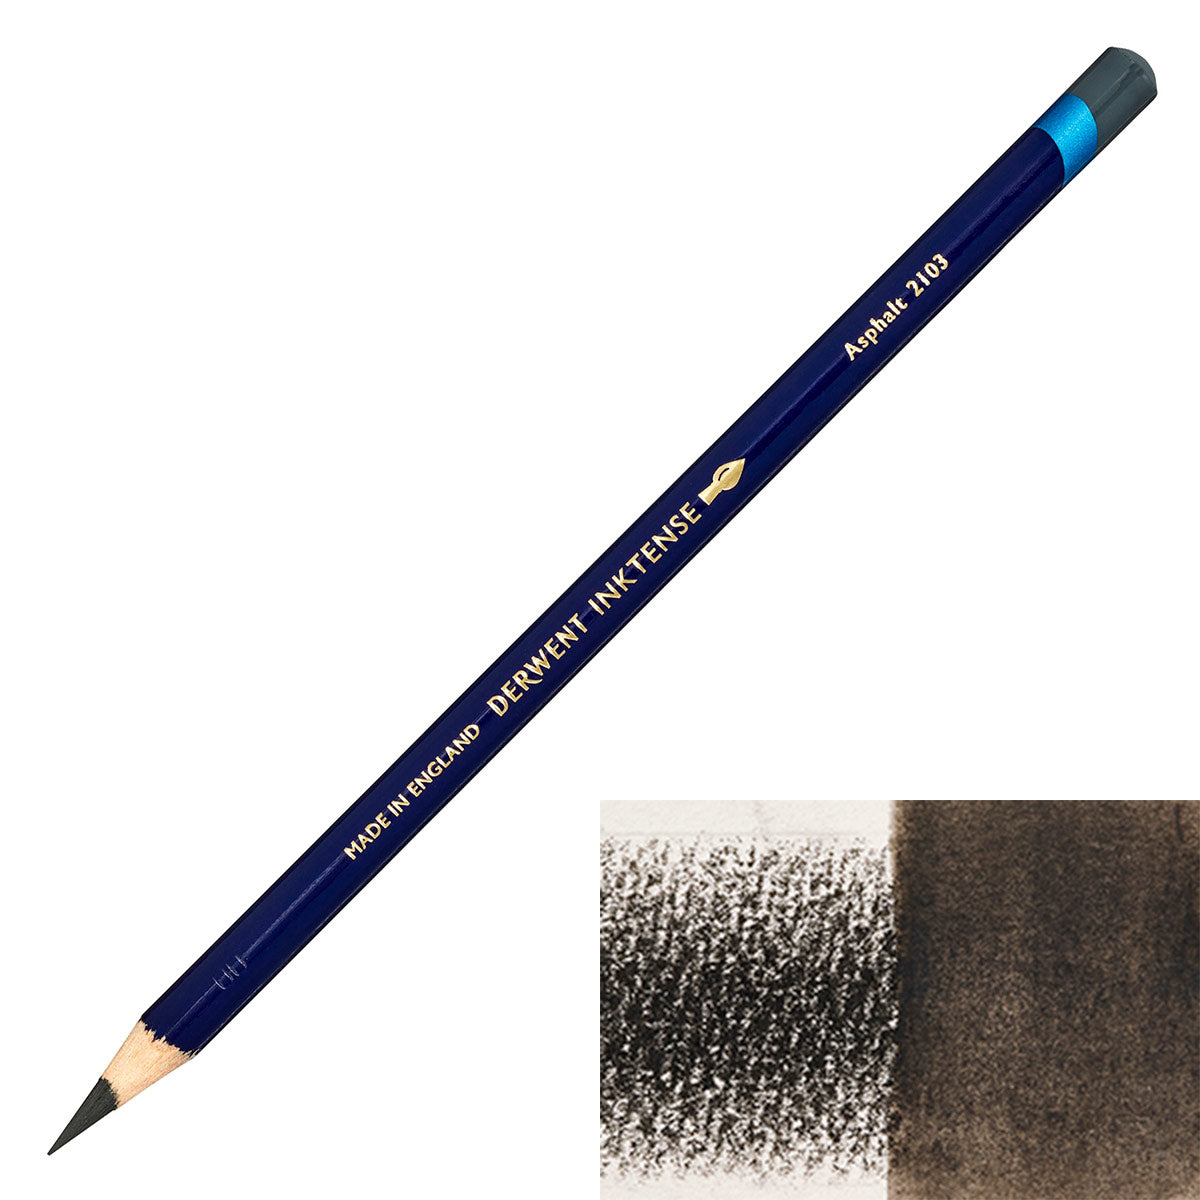 Derwent - Inktense Pencil - Asphalt 2103